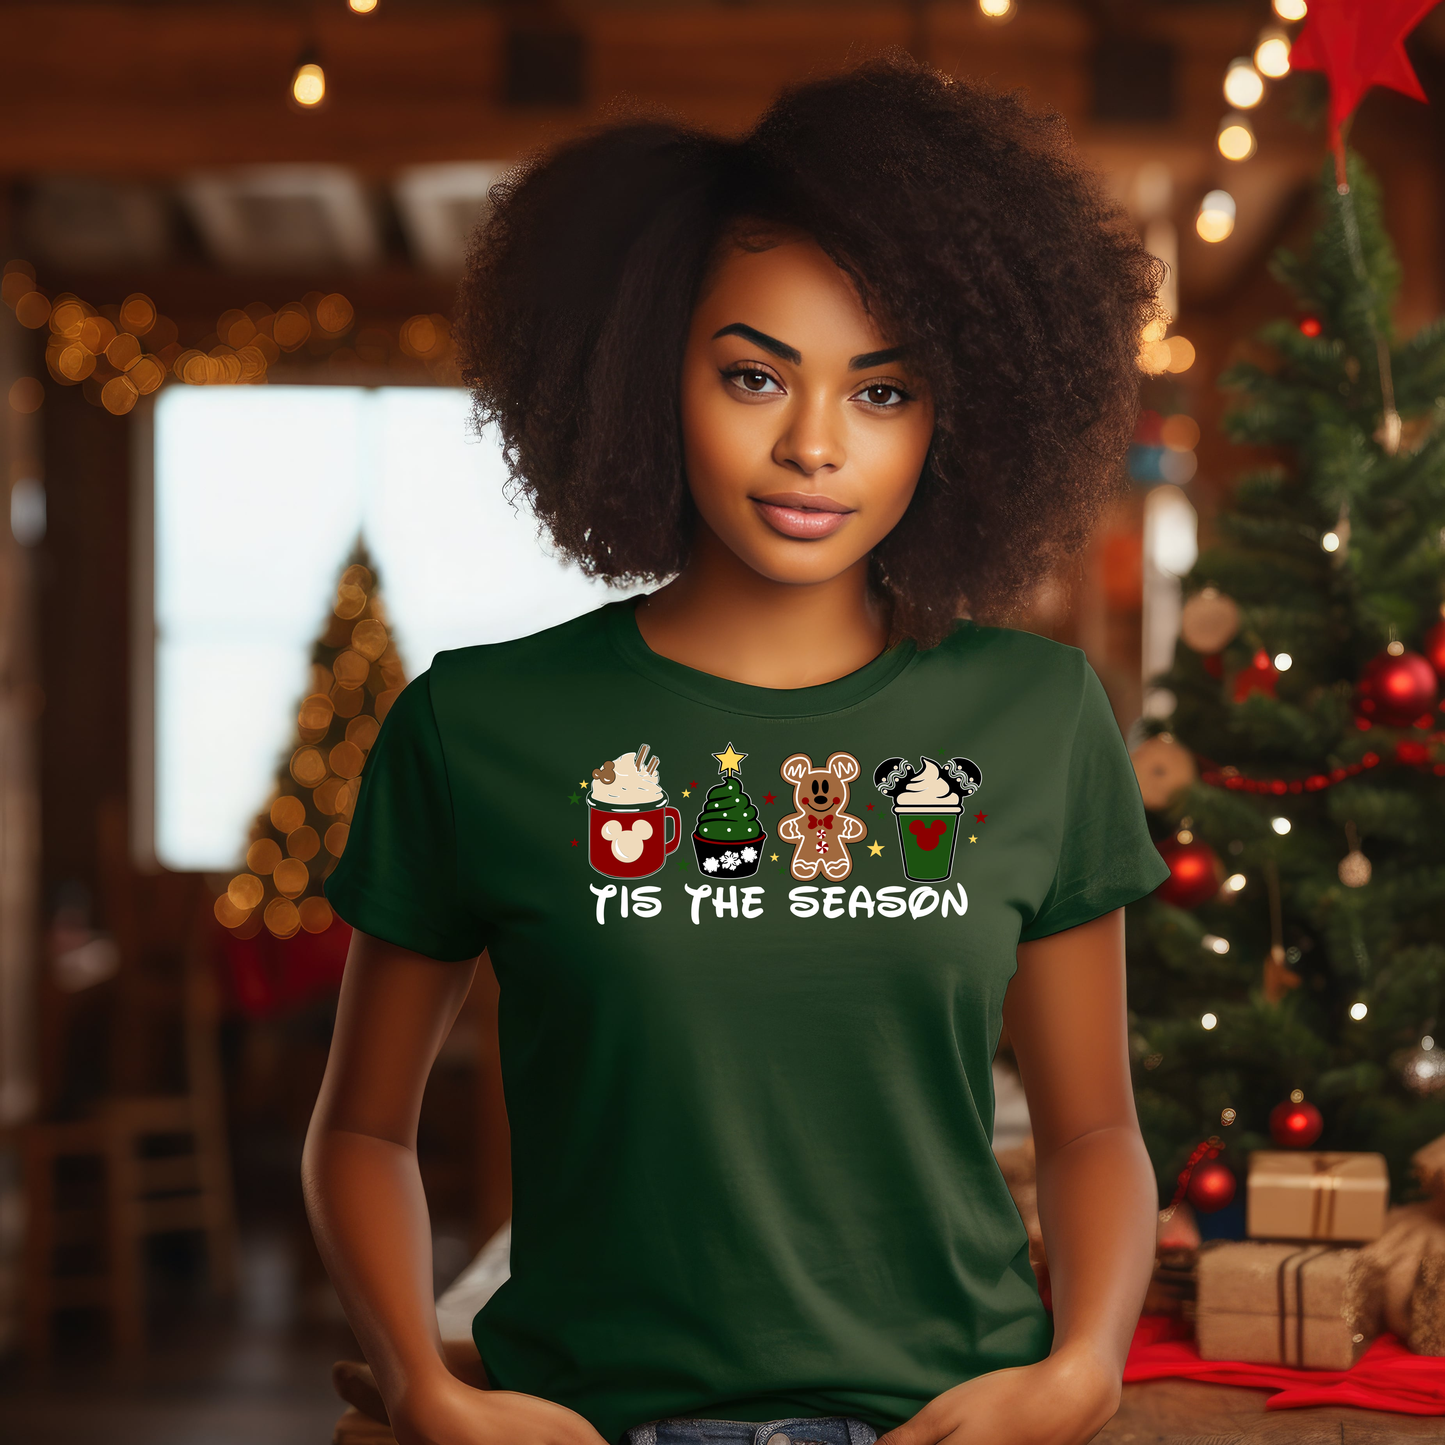 Tis the Season, MVMCP Shirt, Christmas Party Tee, Family Christmas Gift, Best Christmas Ever Tee, Holiday Tee